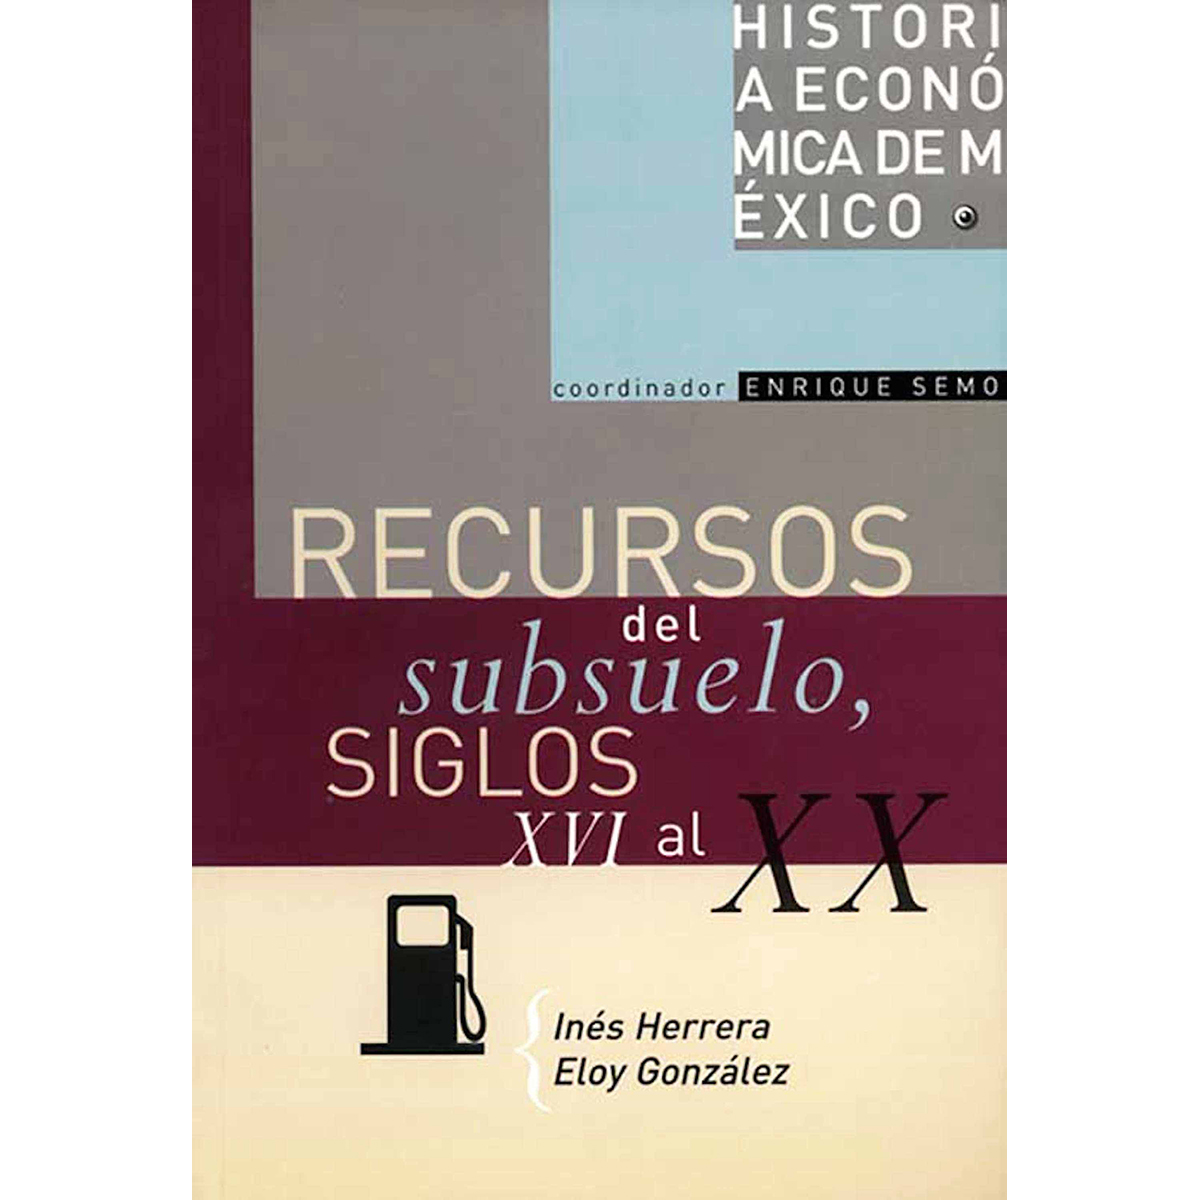 HISTORIA ECONÓMICA DE MÉXICO, VOL. 10. RECURSOS DEL SUBSUELO, SIGLOS XVI AL XX